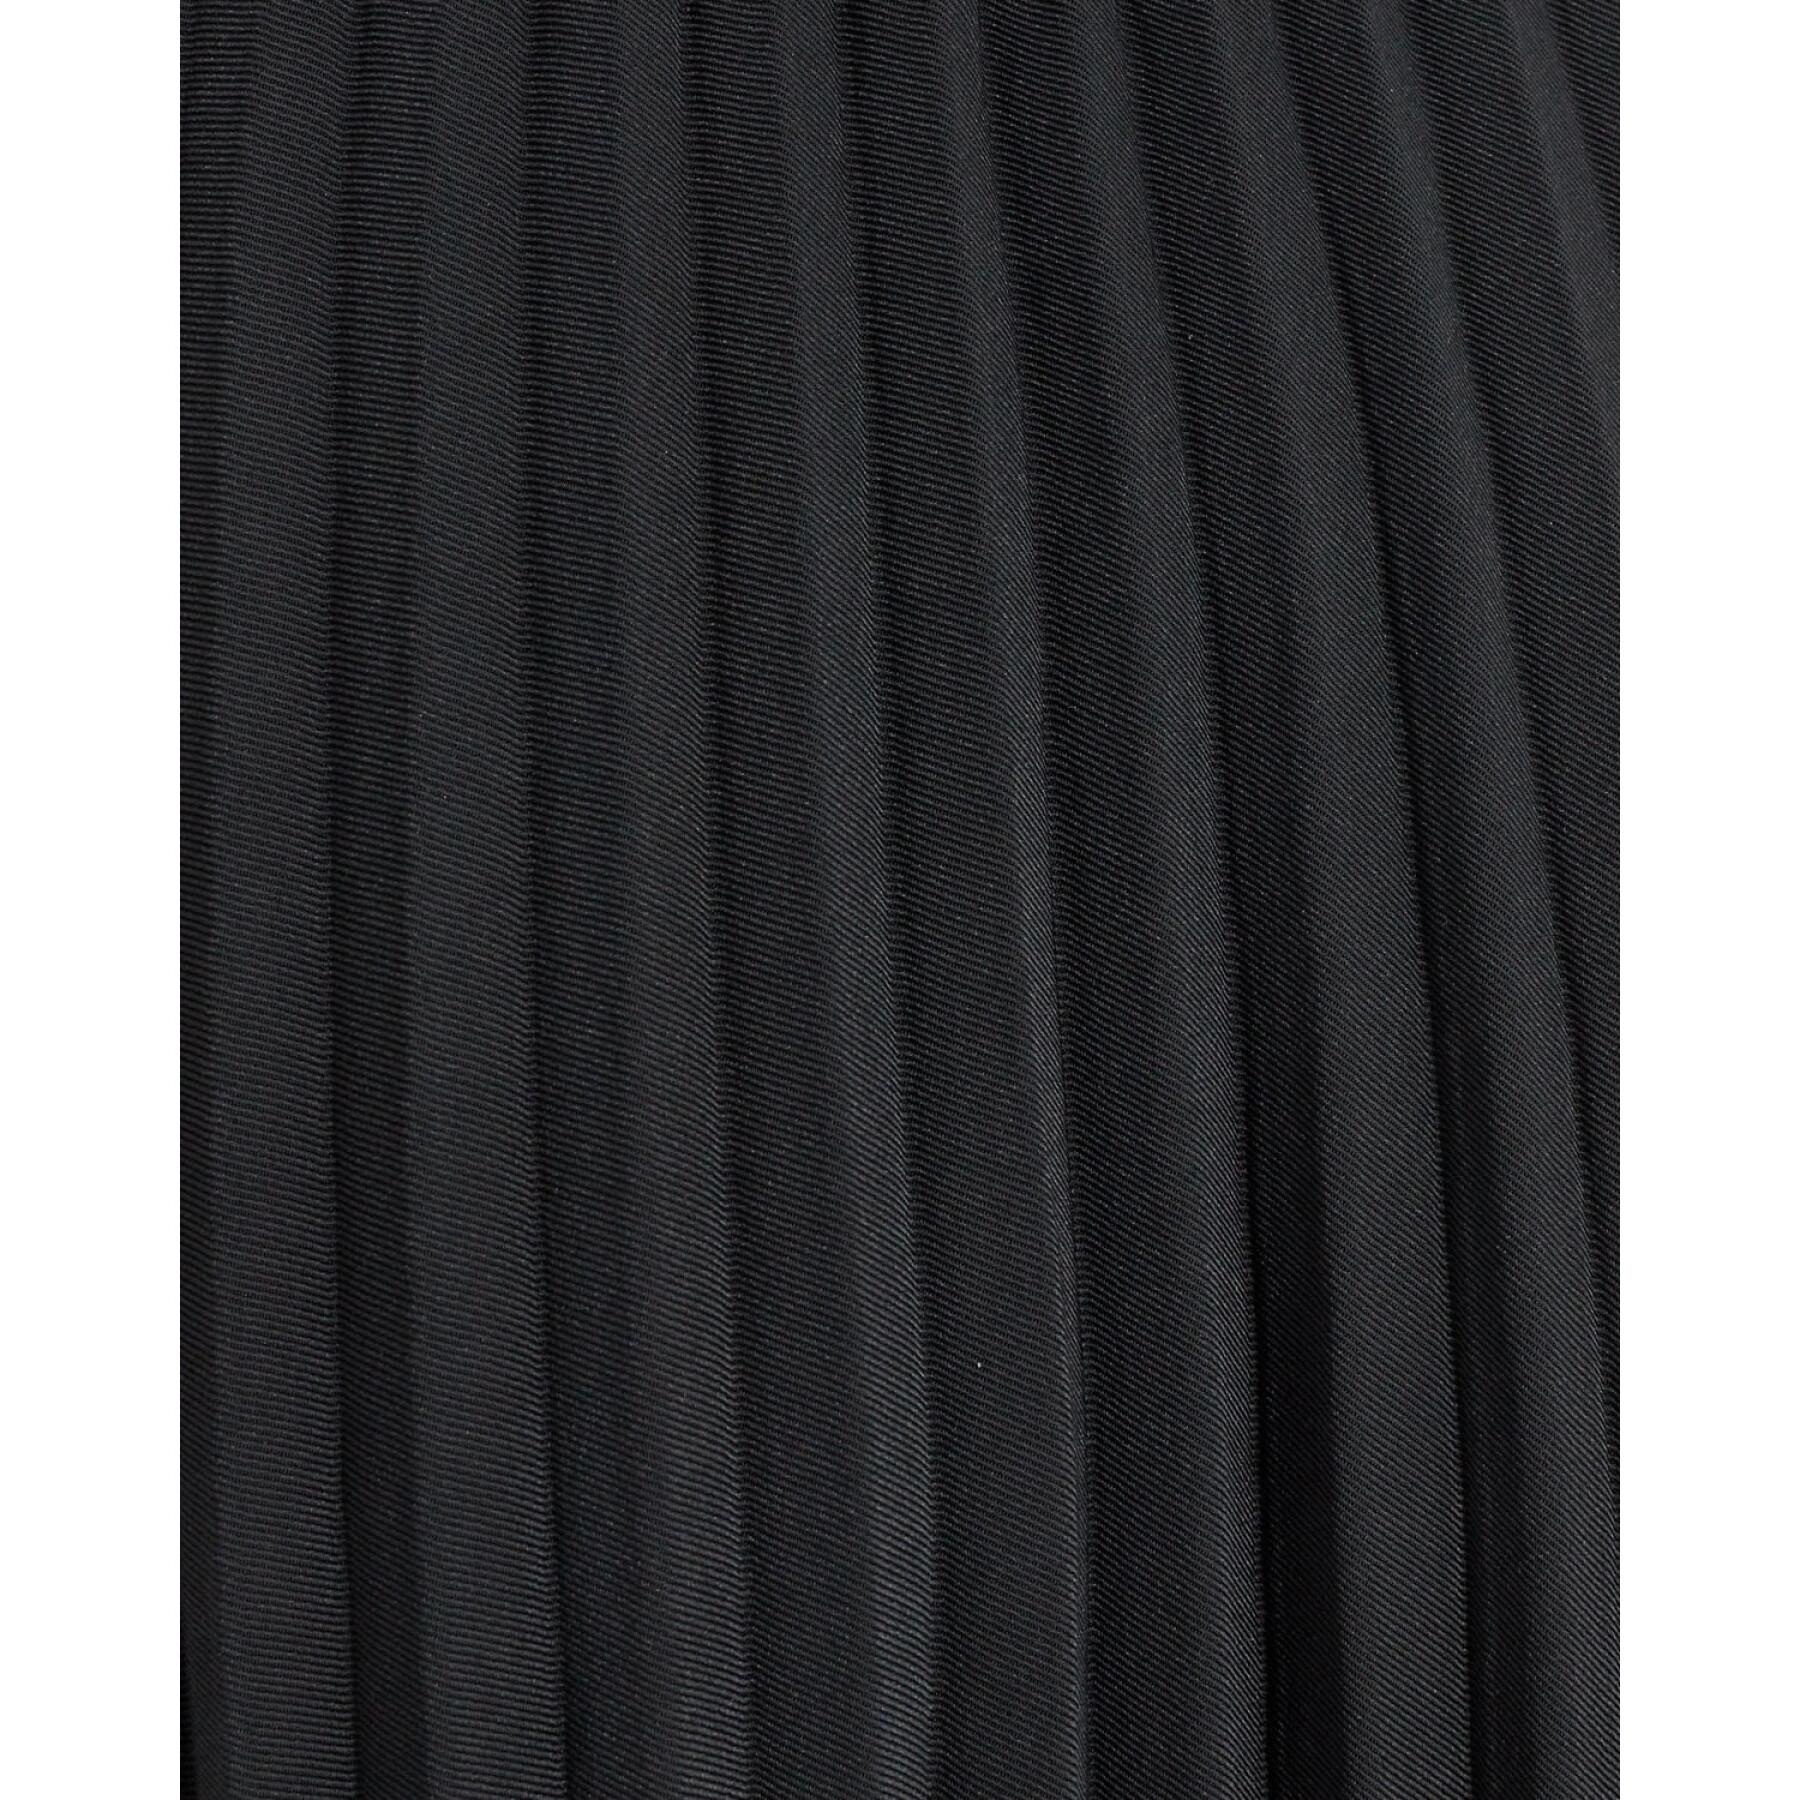 Long skirt woman Minimum Filina 9285